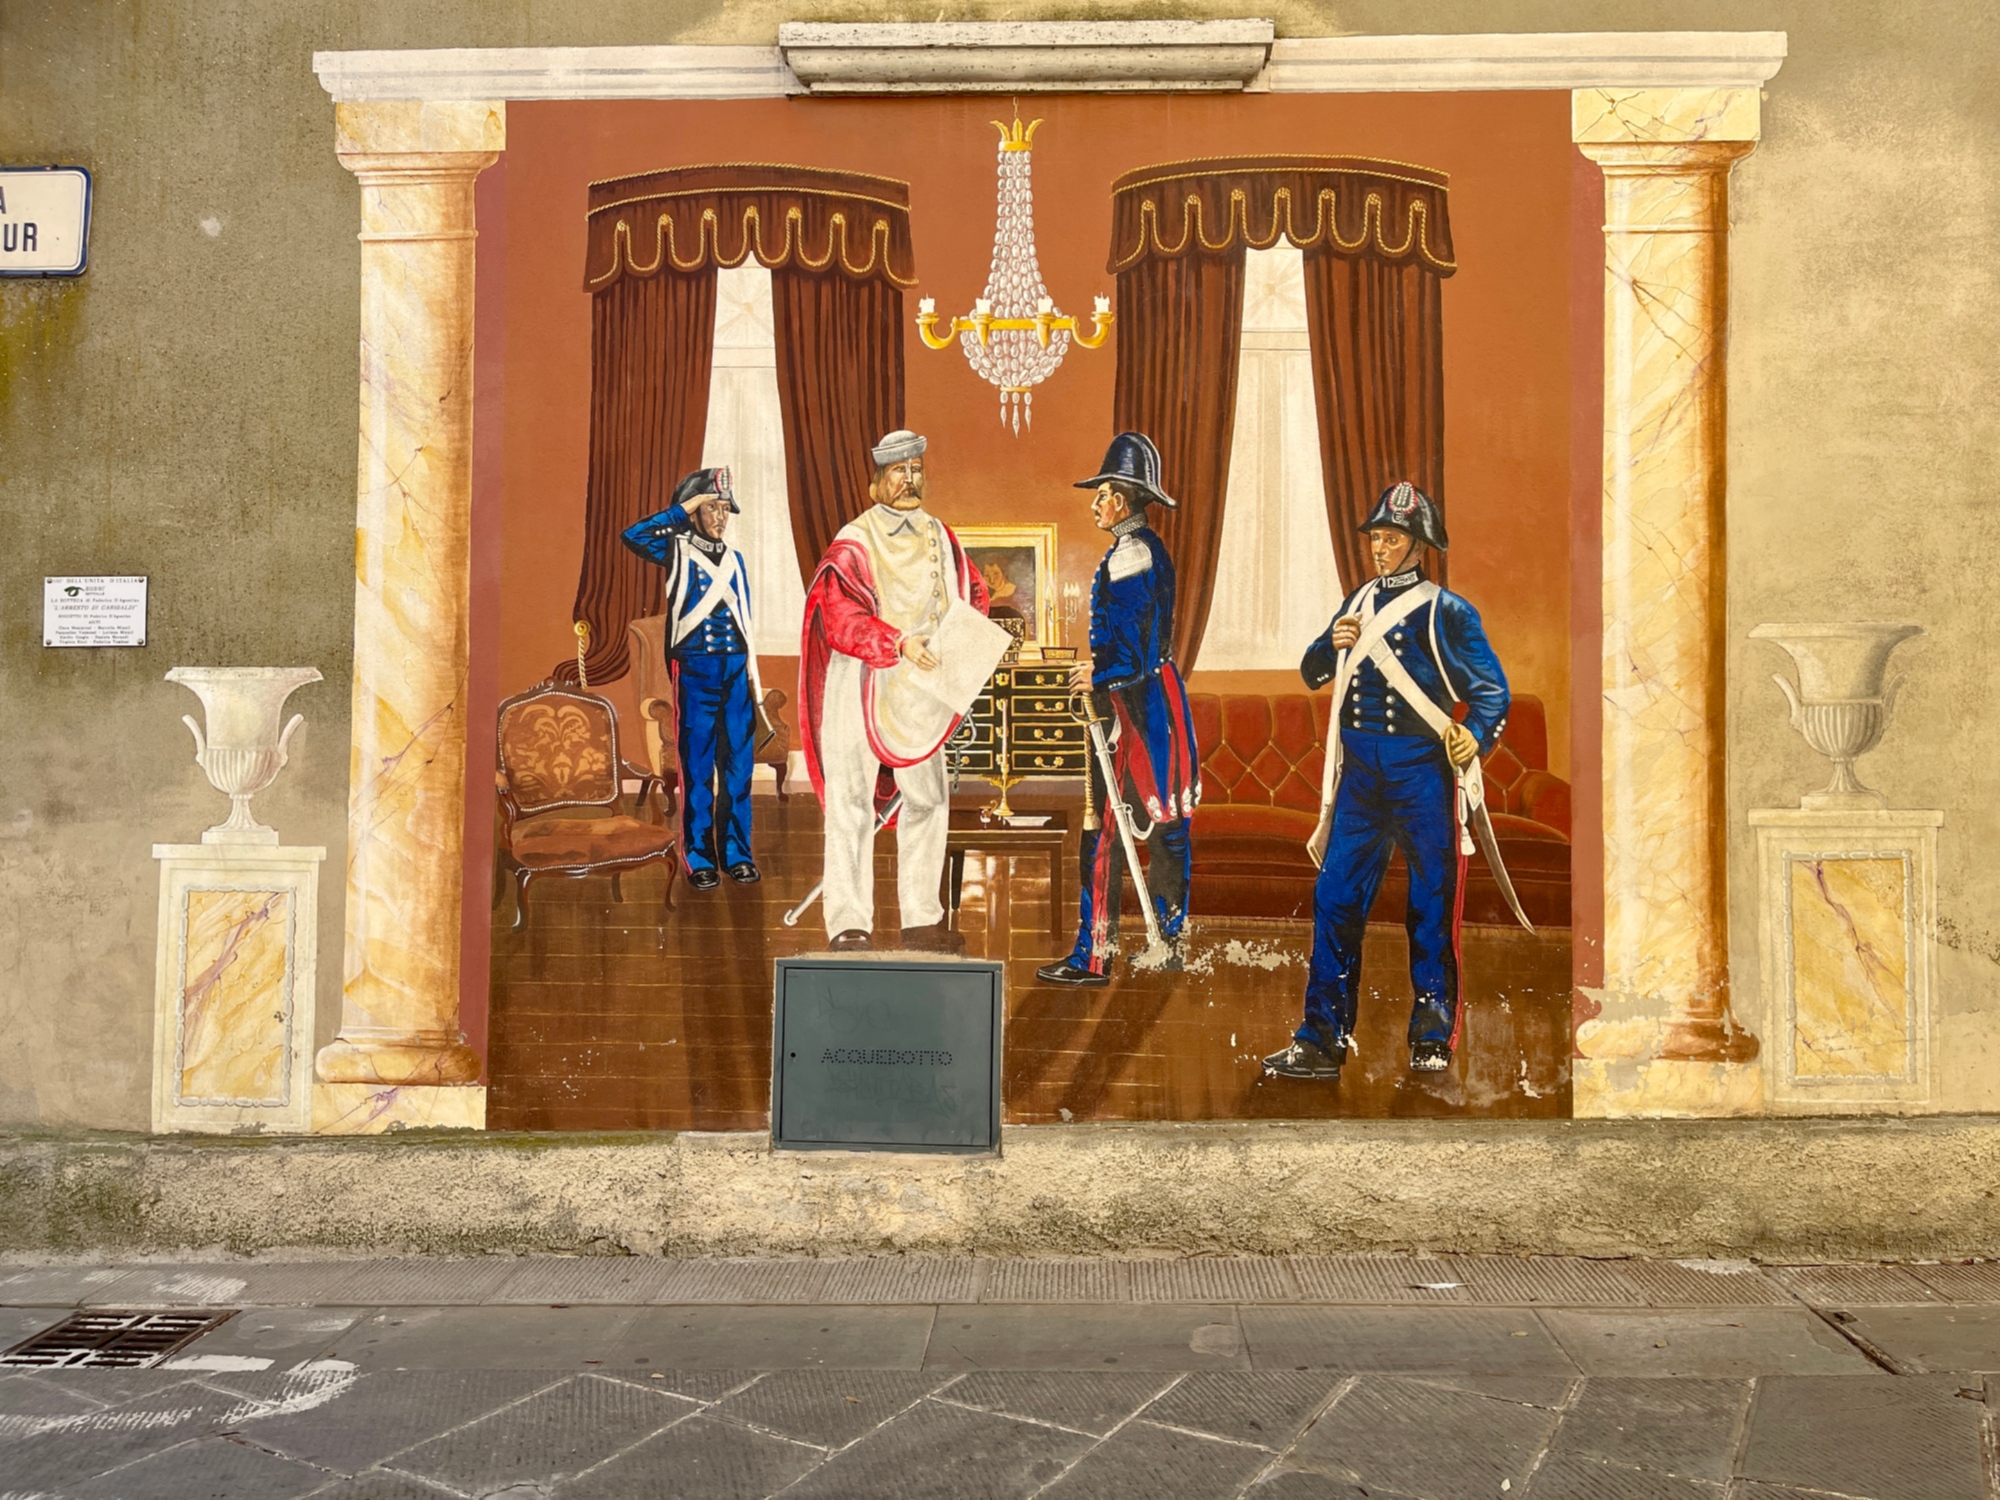 Murale dell'arresto di Giuseppe Garibaldi a Sinalunga, situato in via Cavour